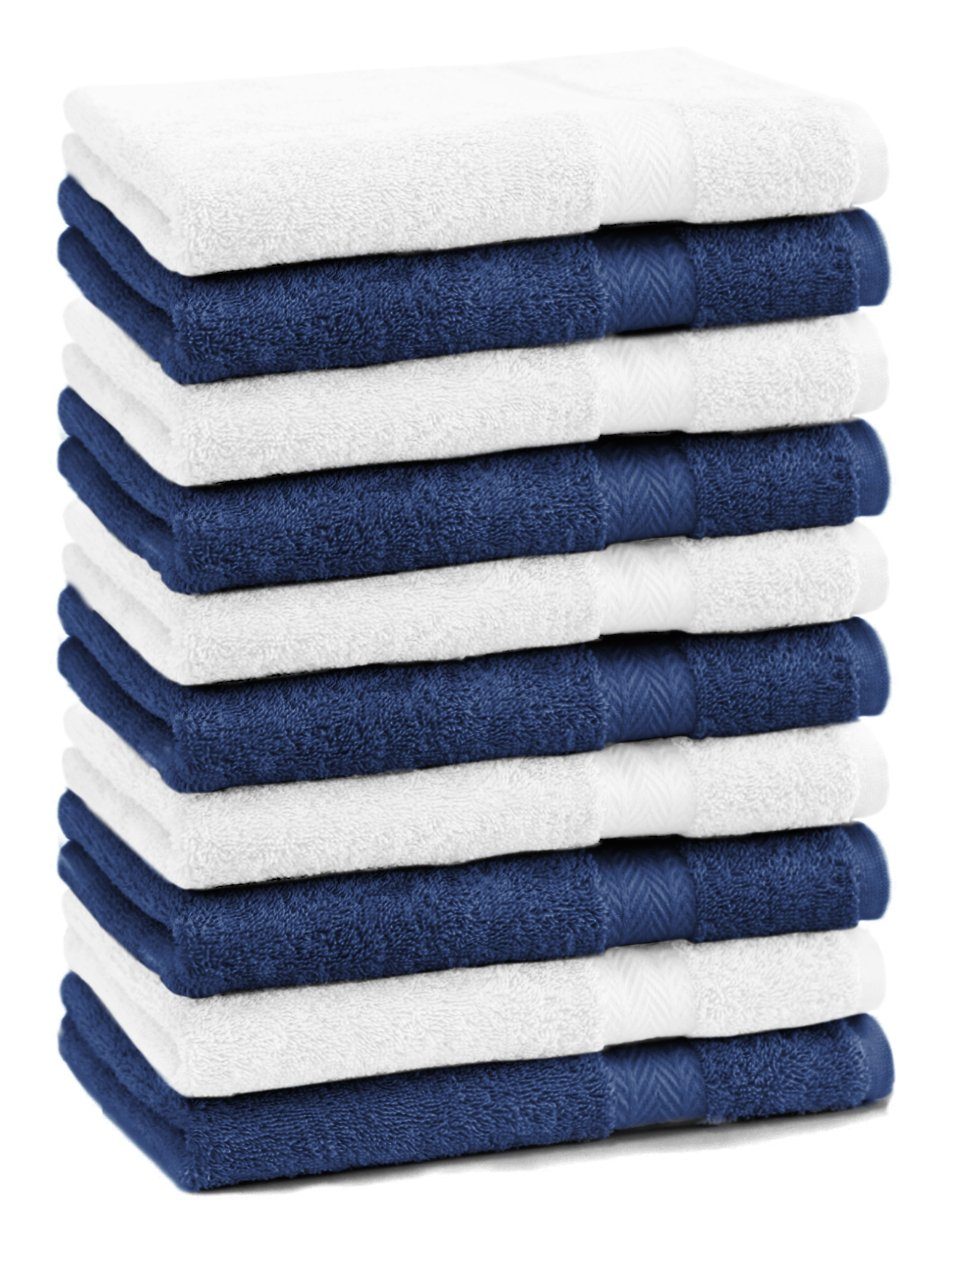 Betz Gästehandtücher 10 Stück Gästehandtücher Premium 100% Baumwolle Gästetuch-Set 30x50 cm Farbe dunkelblau und weiß, 100% Baumwolle